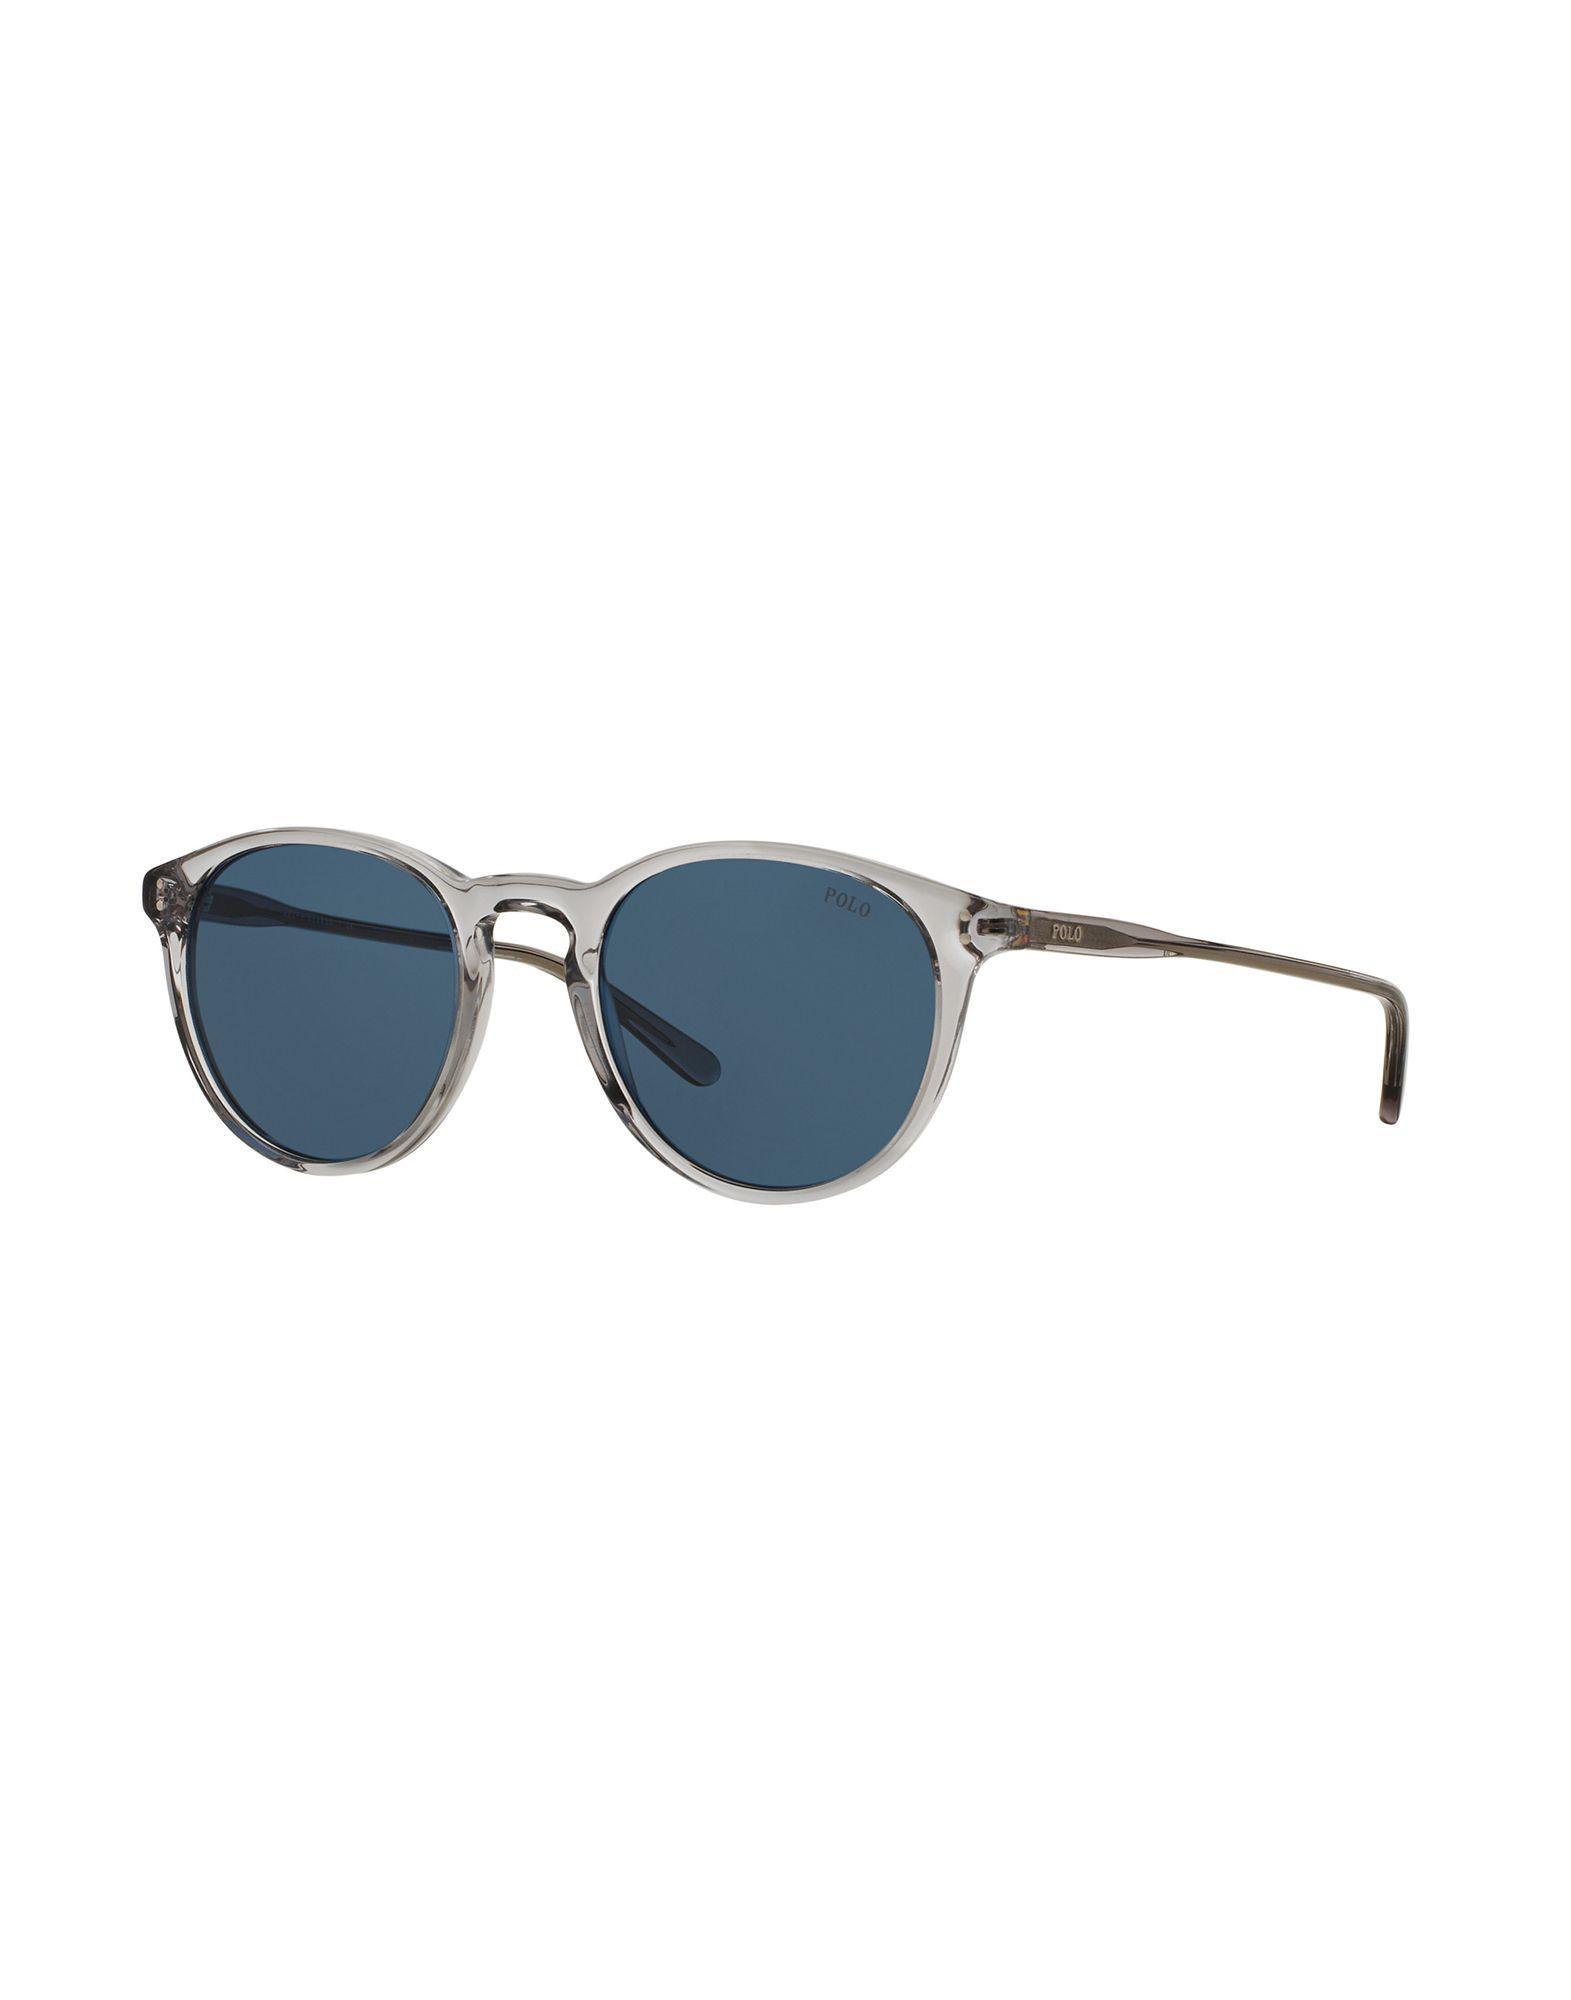 Polo Ralph Lauren Sunglasses In Blue For Men Lyst